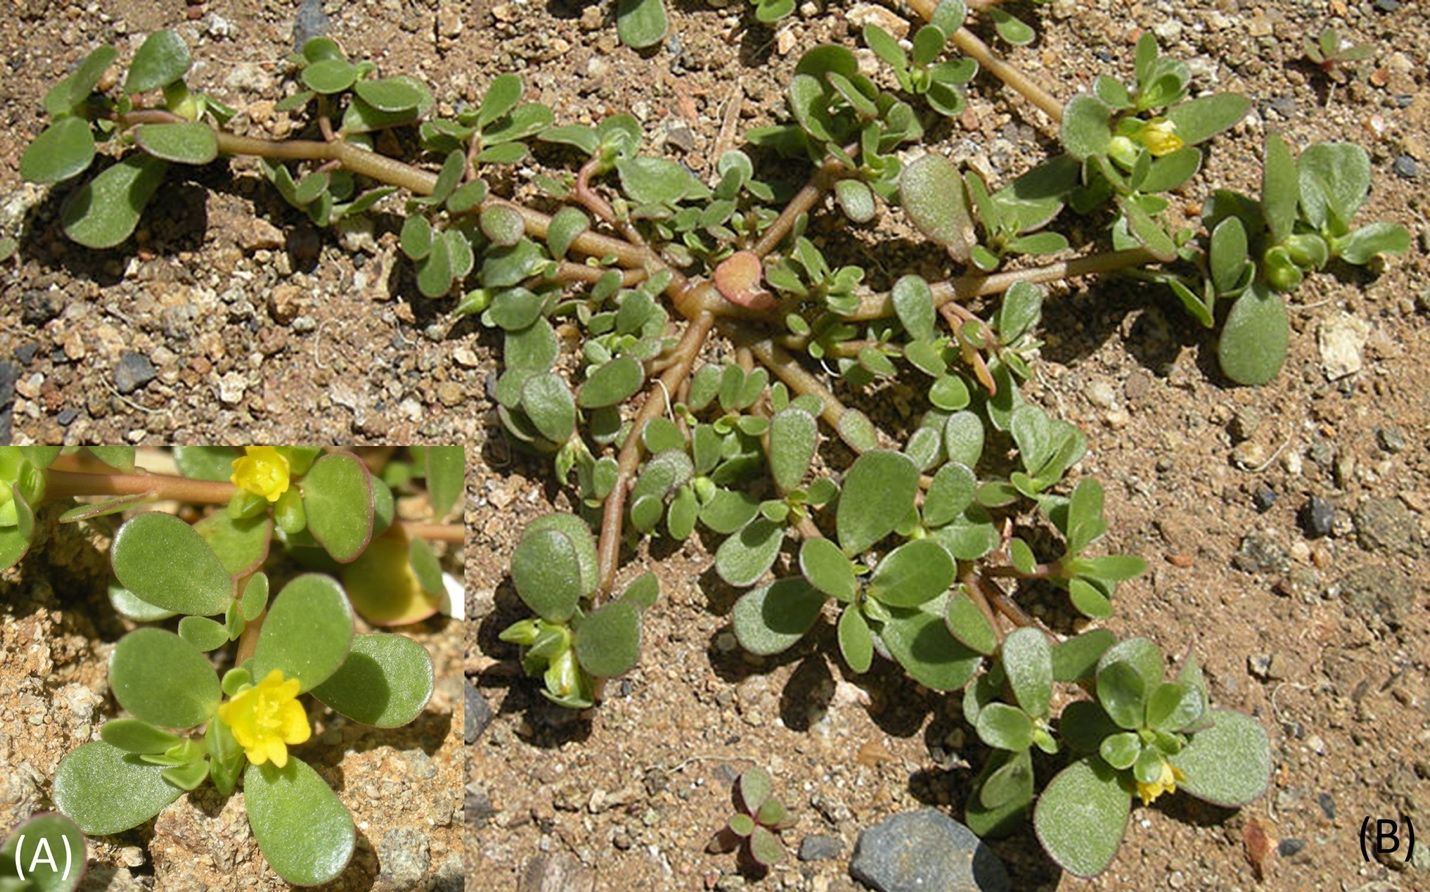 Portulaca oleracea (A) flower and (B) foliage sprawled growth habit.